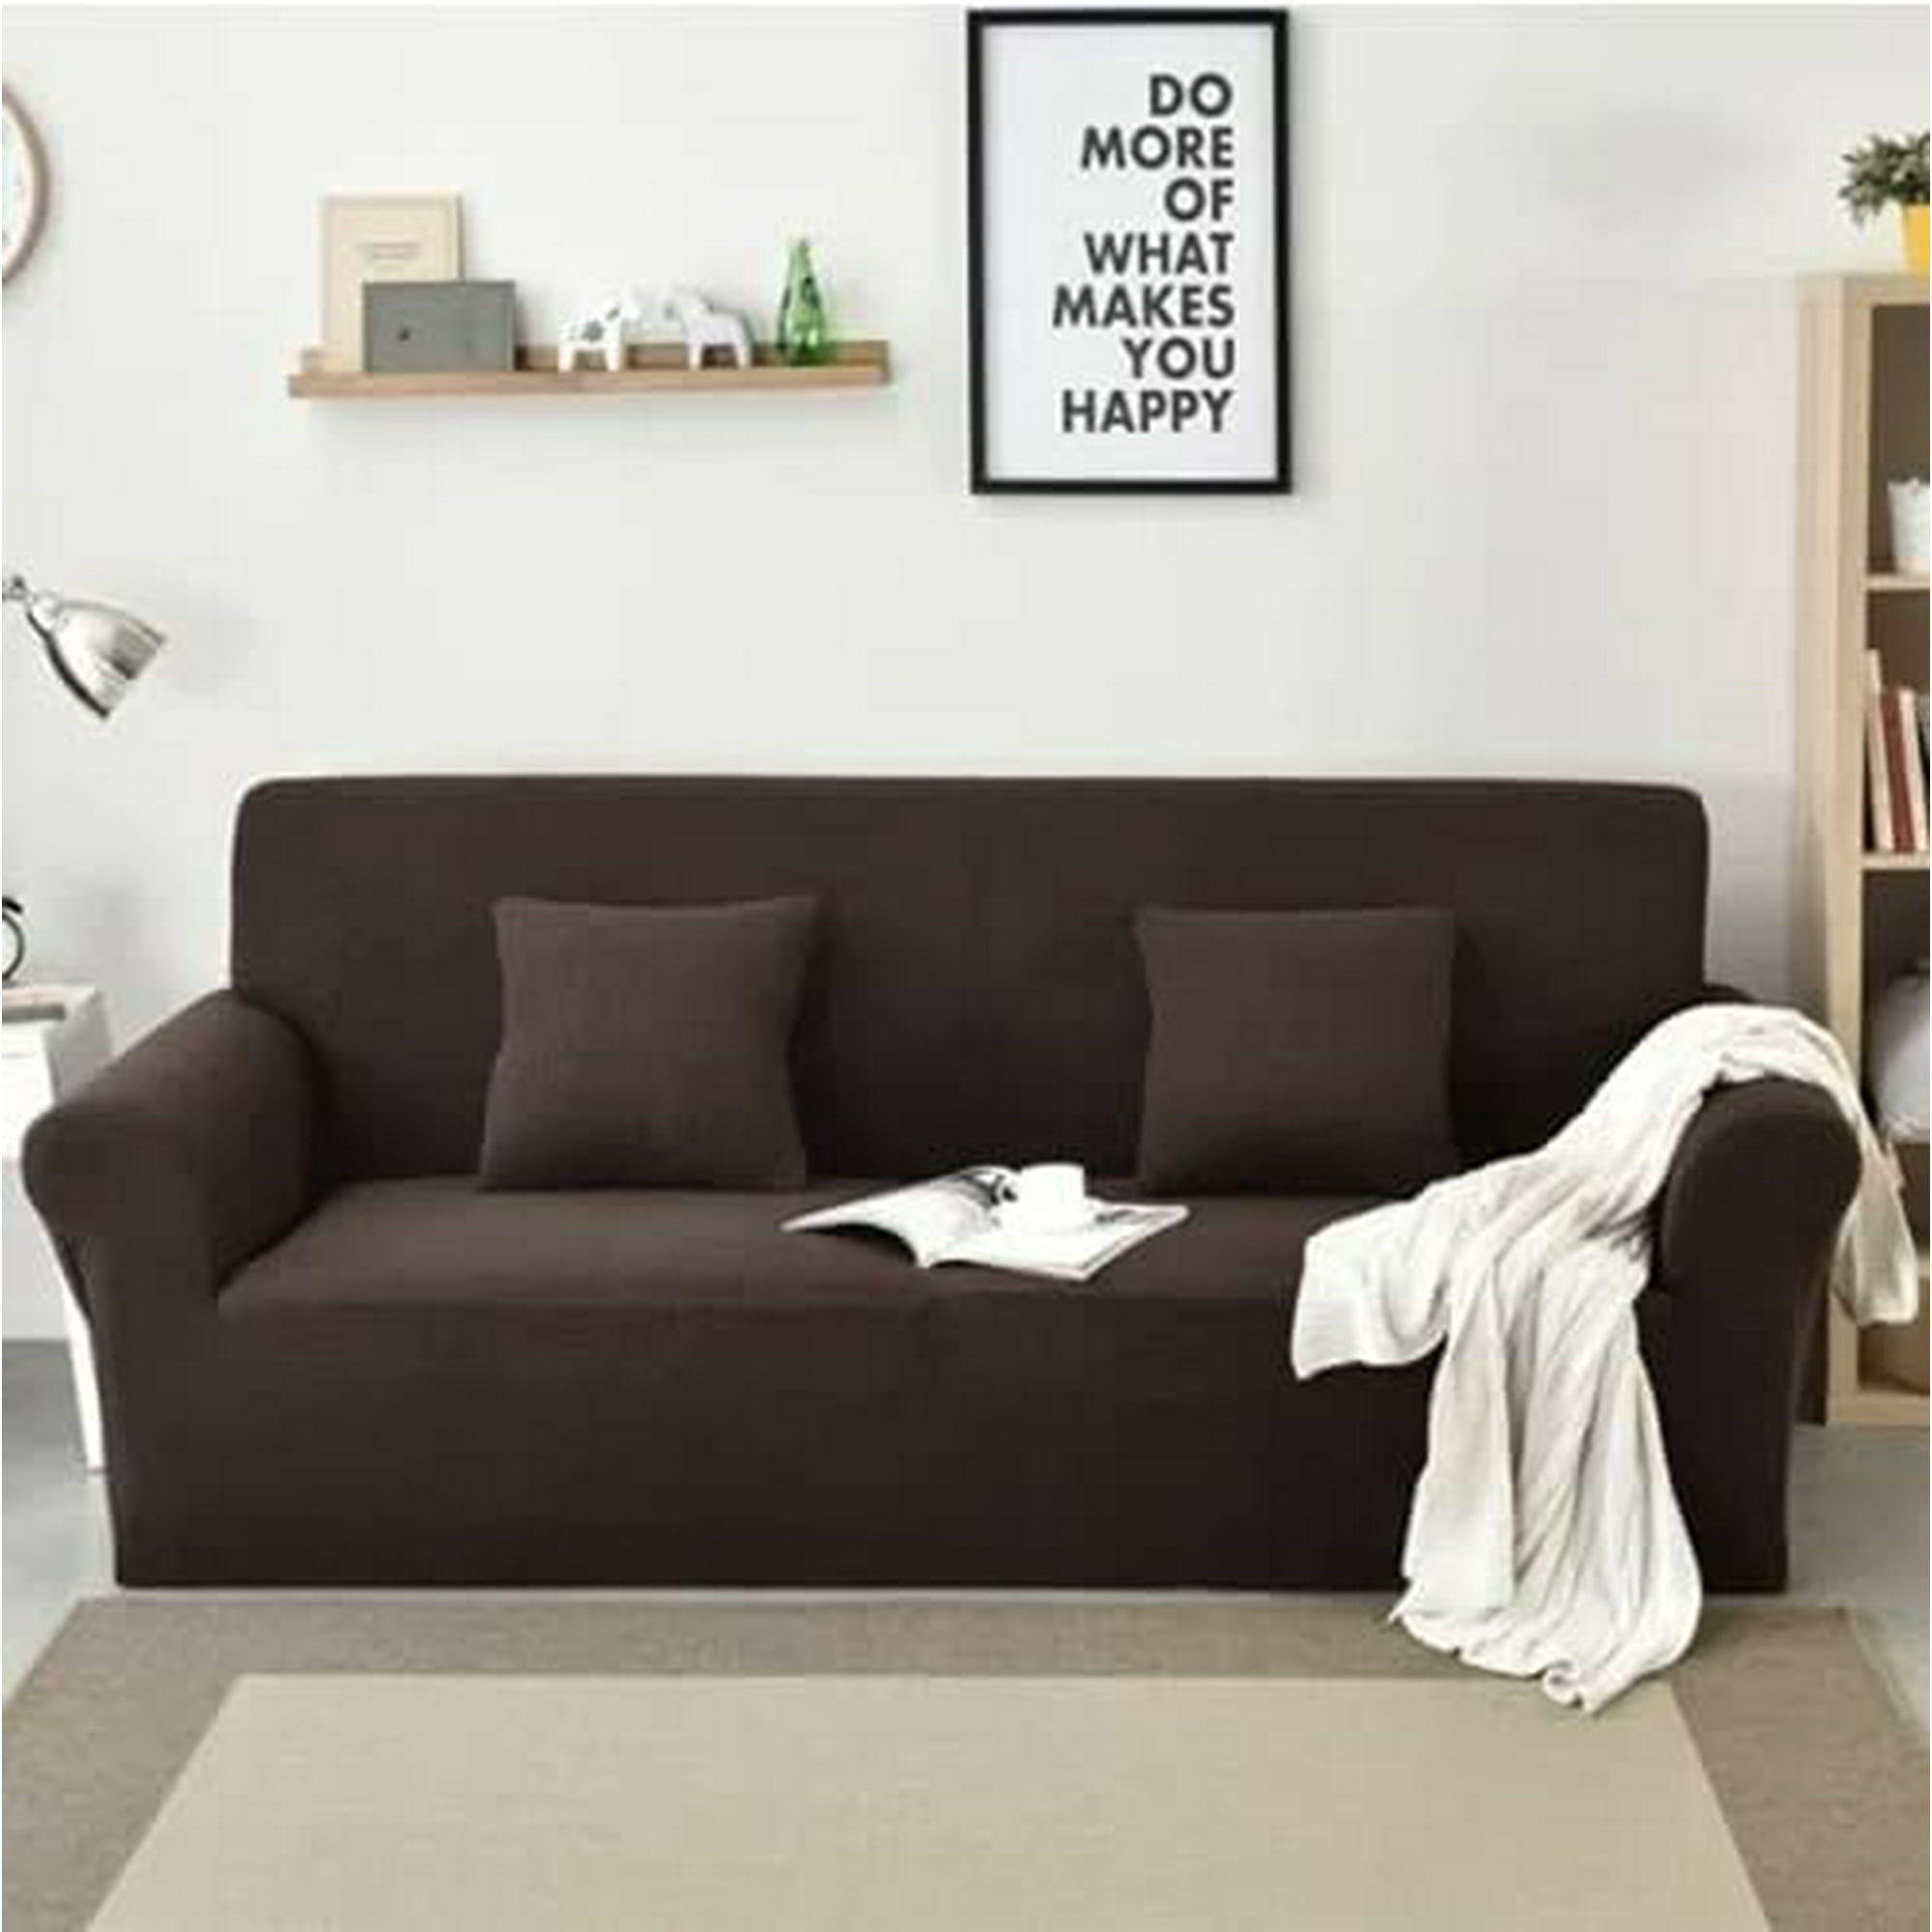 De Color sólido funda sofa suave desmontable funda sofa elastica